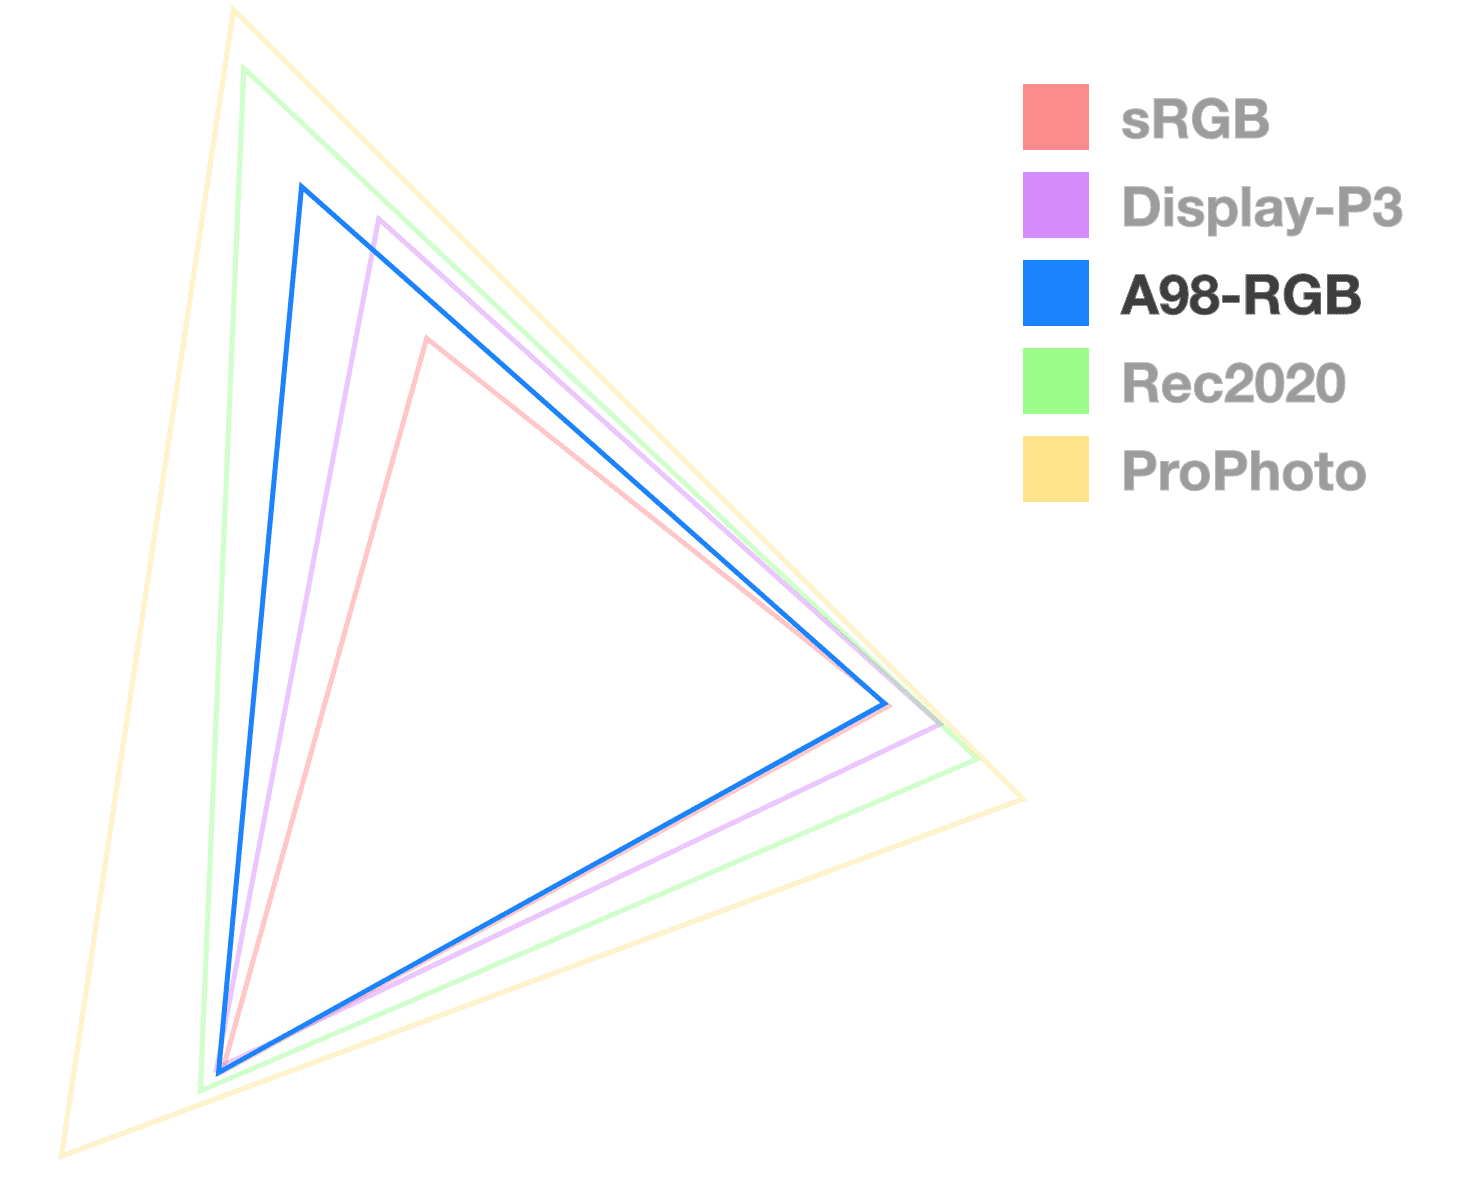 El triángulo A98 es el único completamente opaco porque ayuda a visualizar el tamaño de la gama. Se parece al triángulo del tamaño medio.